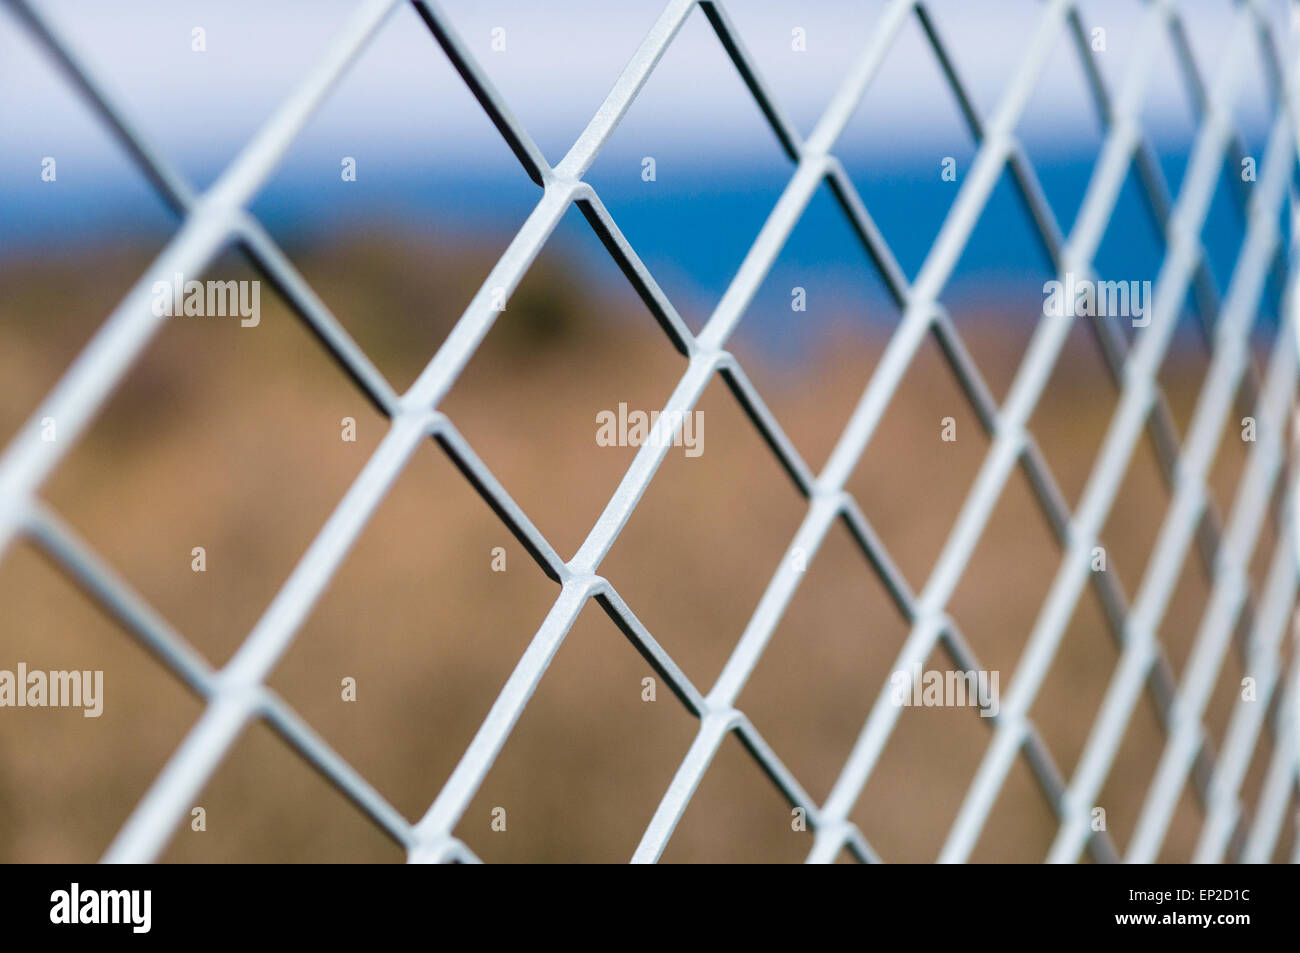 Solid metallic mesh fence Stock Photo